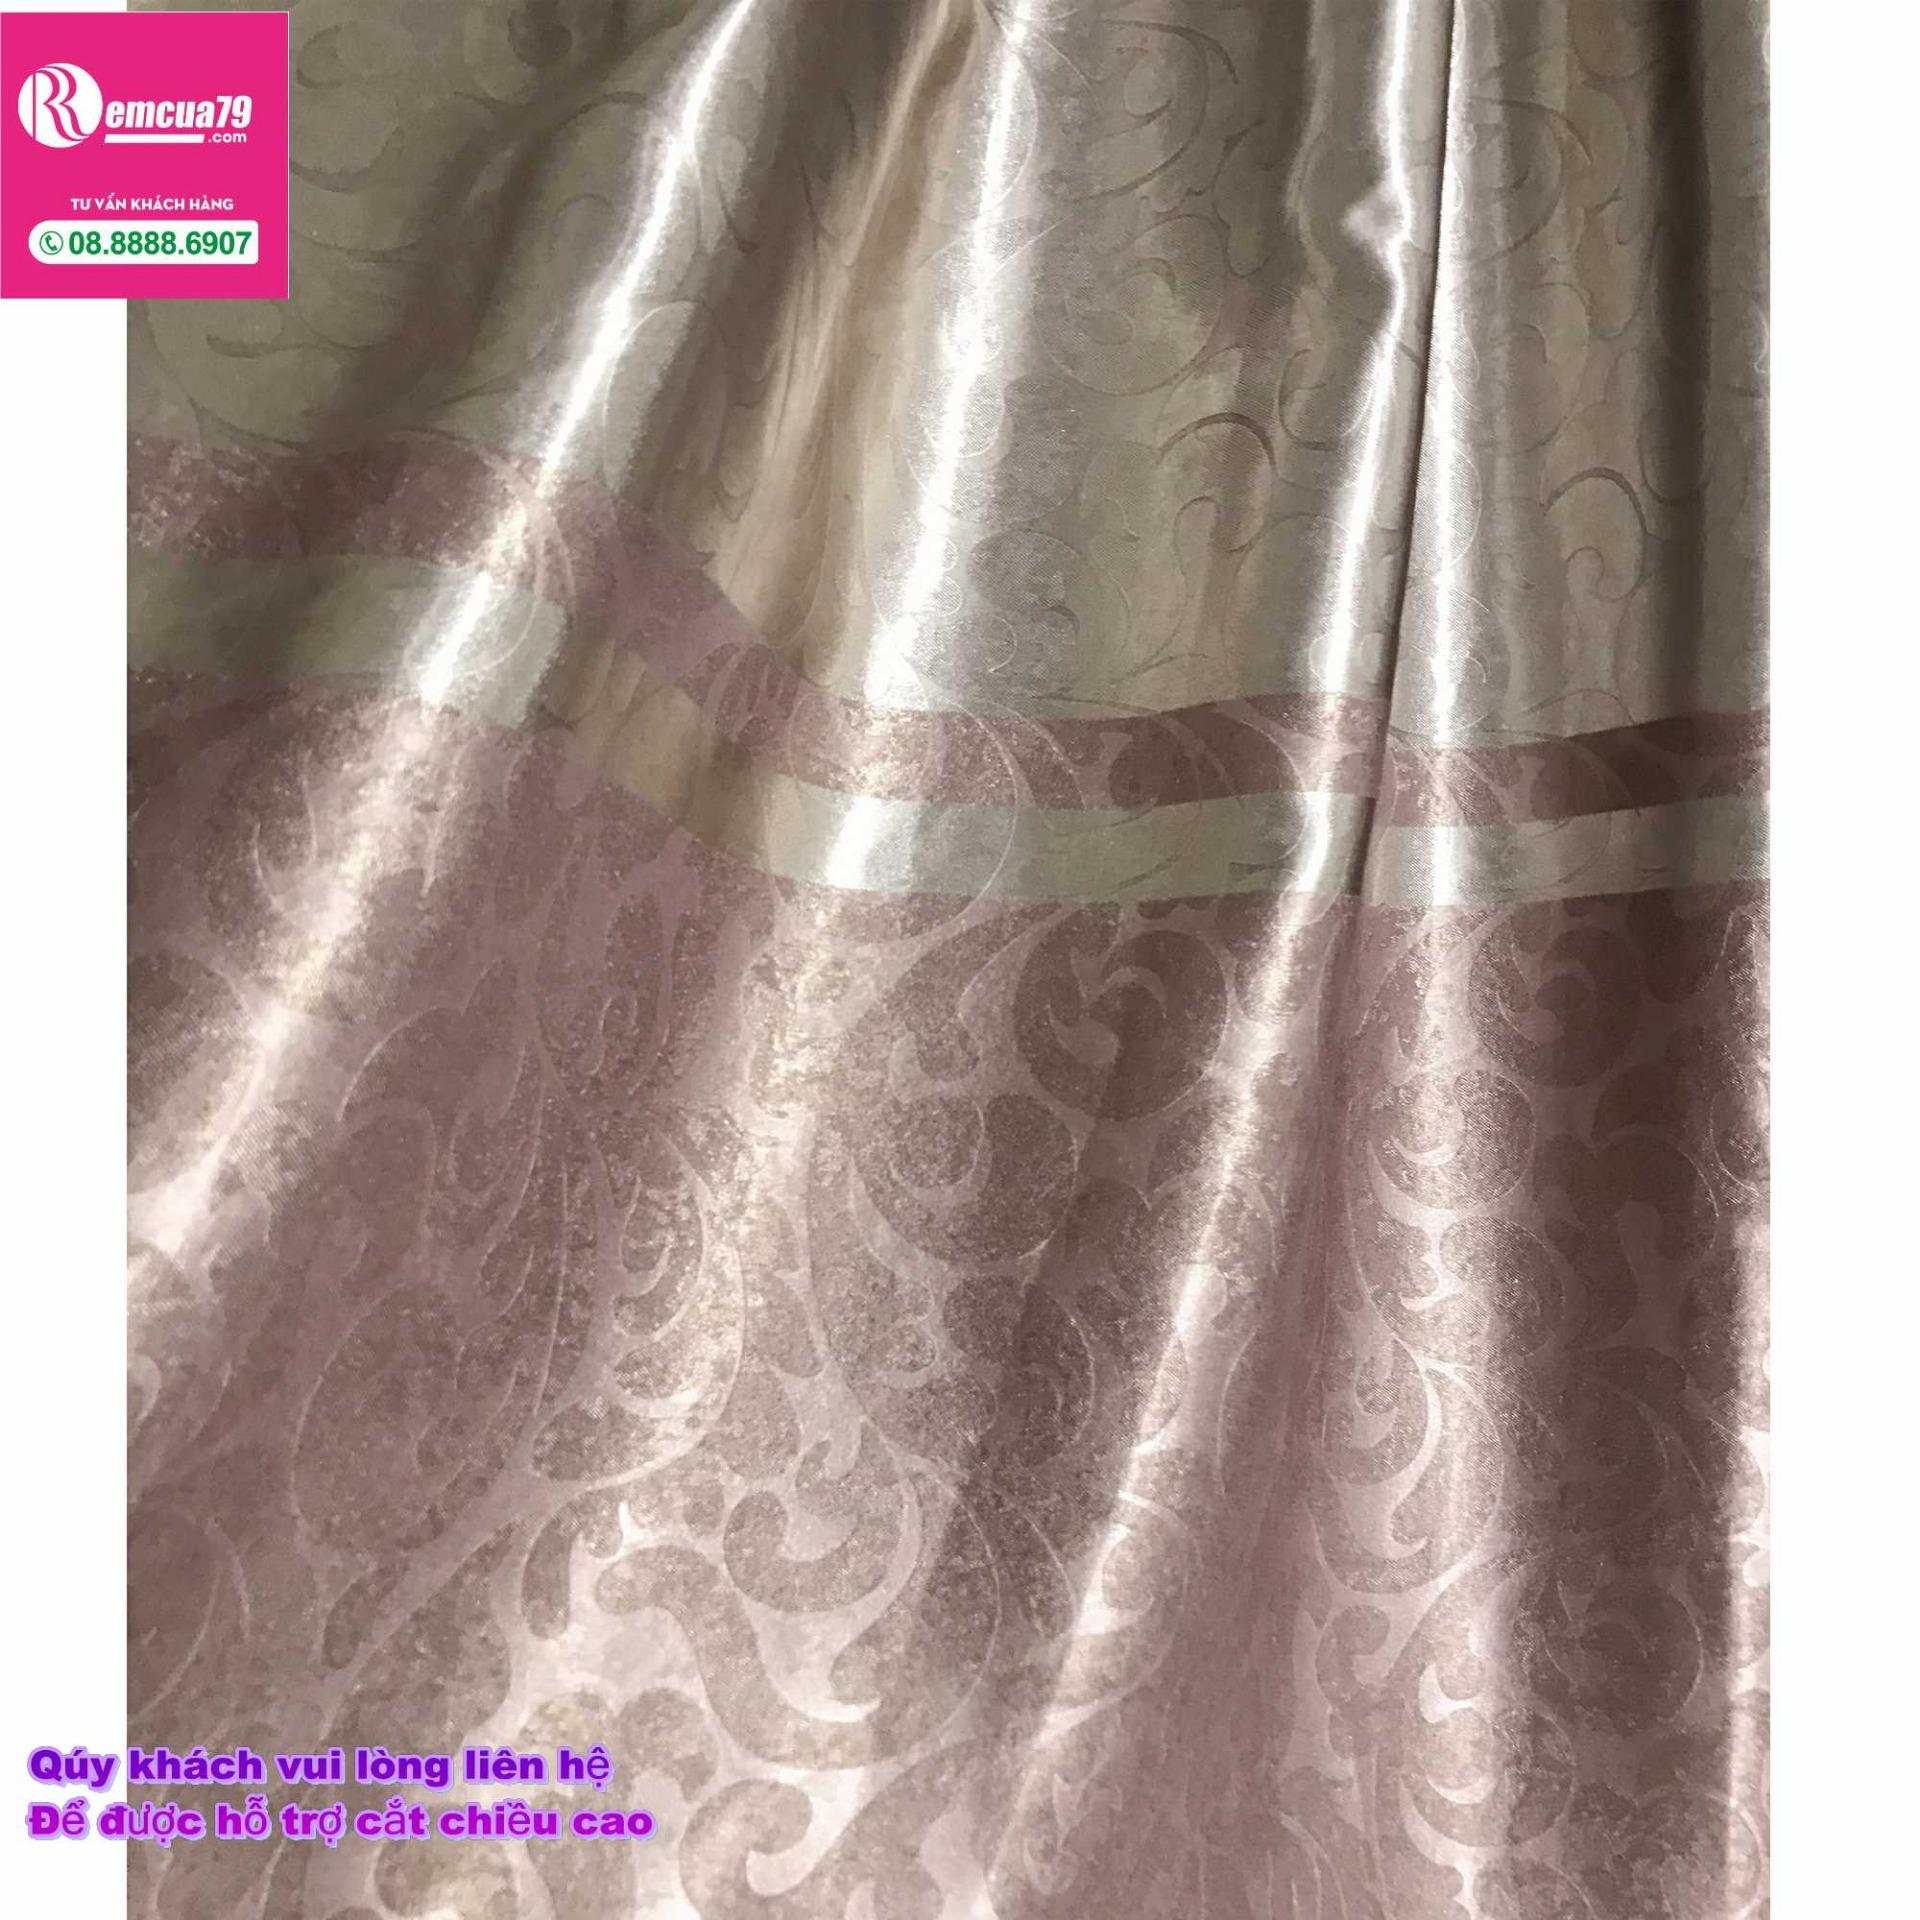 Rèm, màn cửa Ph curtains( ngang250cm x cao 270cm) màu Xám nâu hoa văn chìm hiện đại + tặng dây vén màn